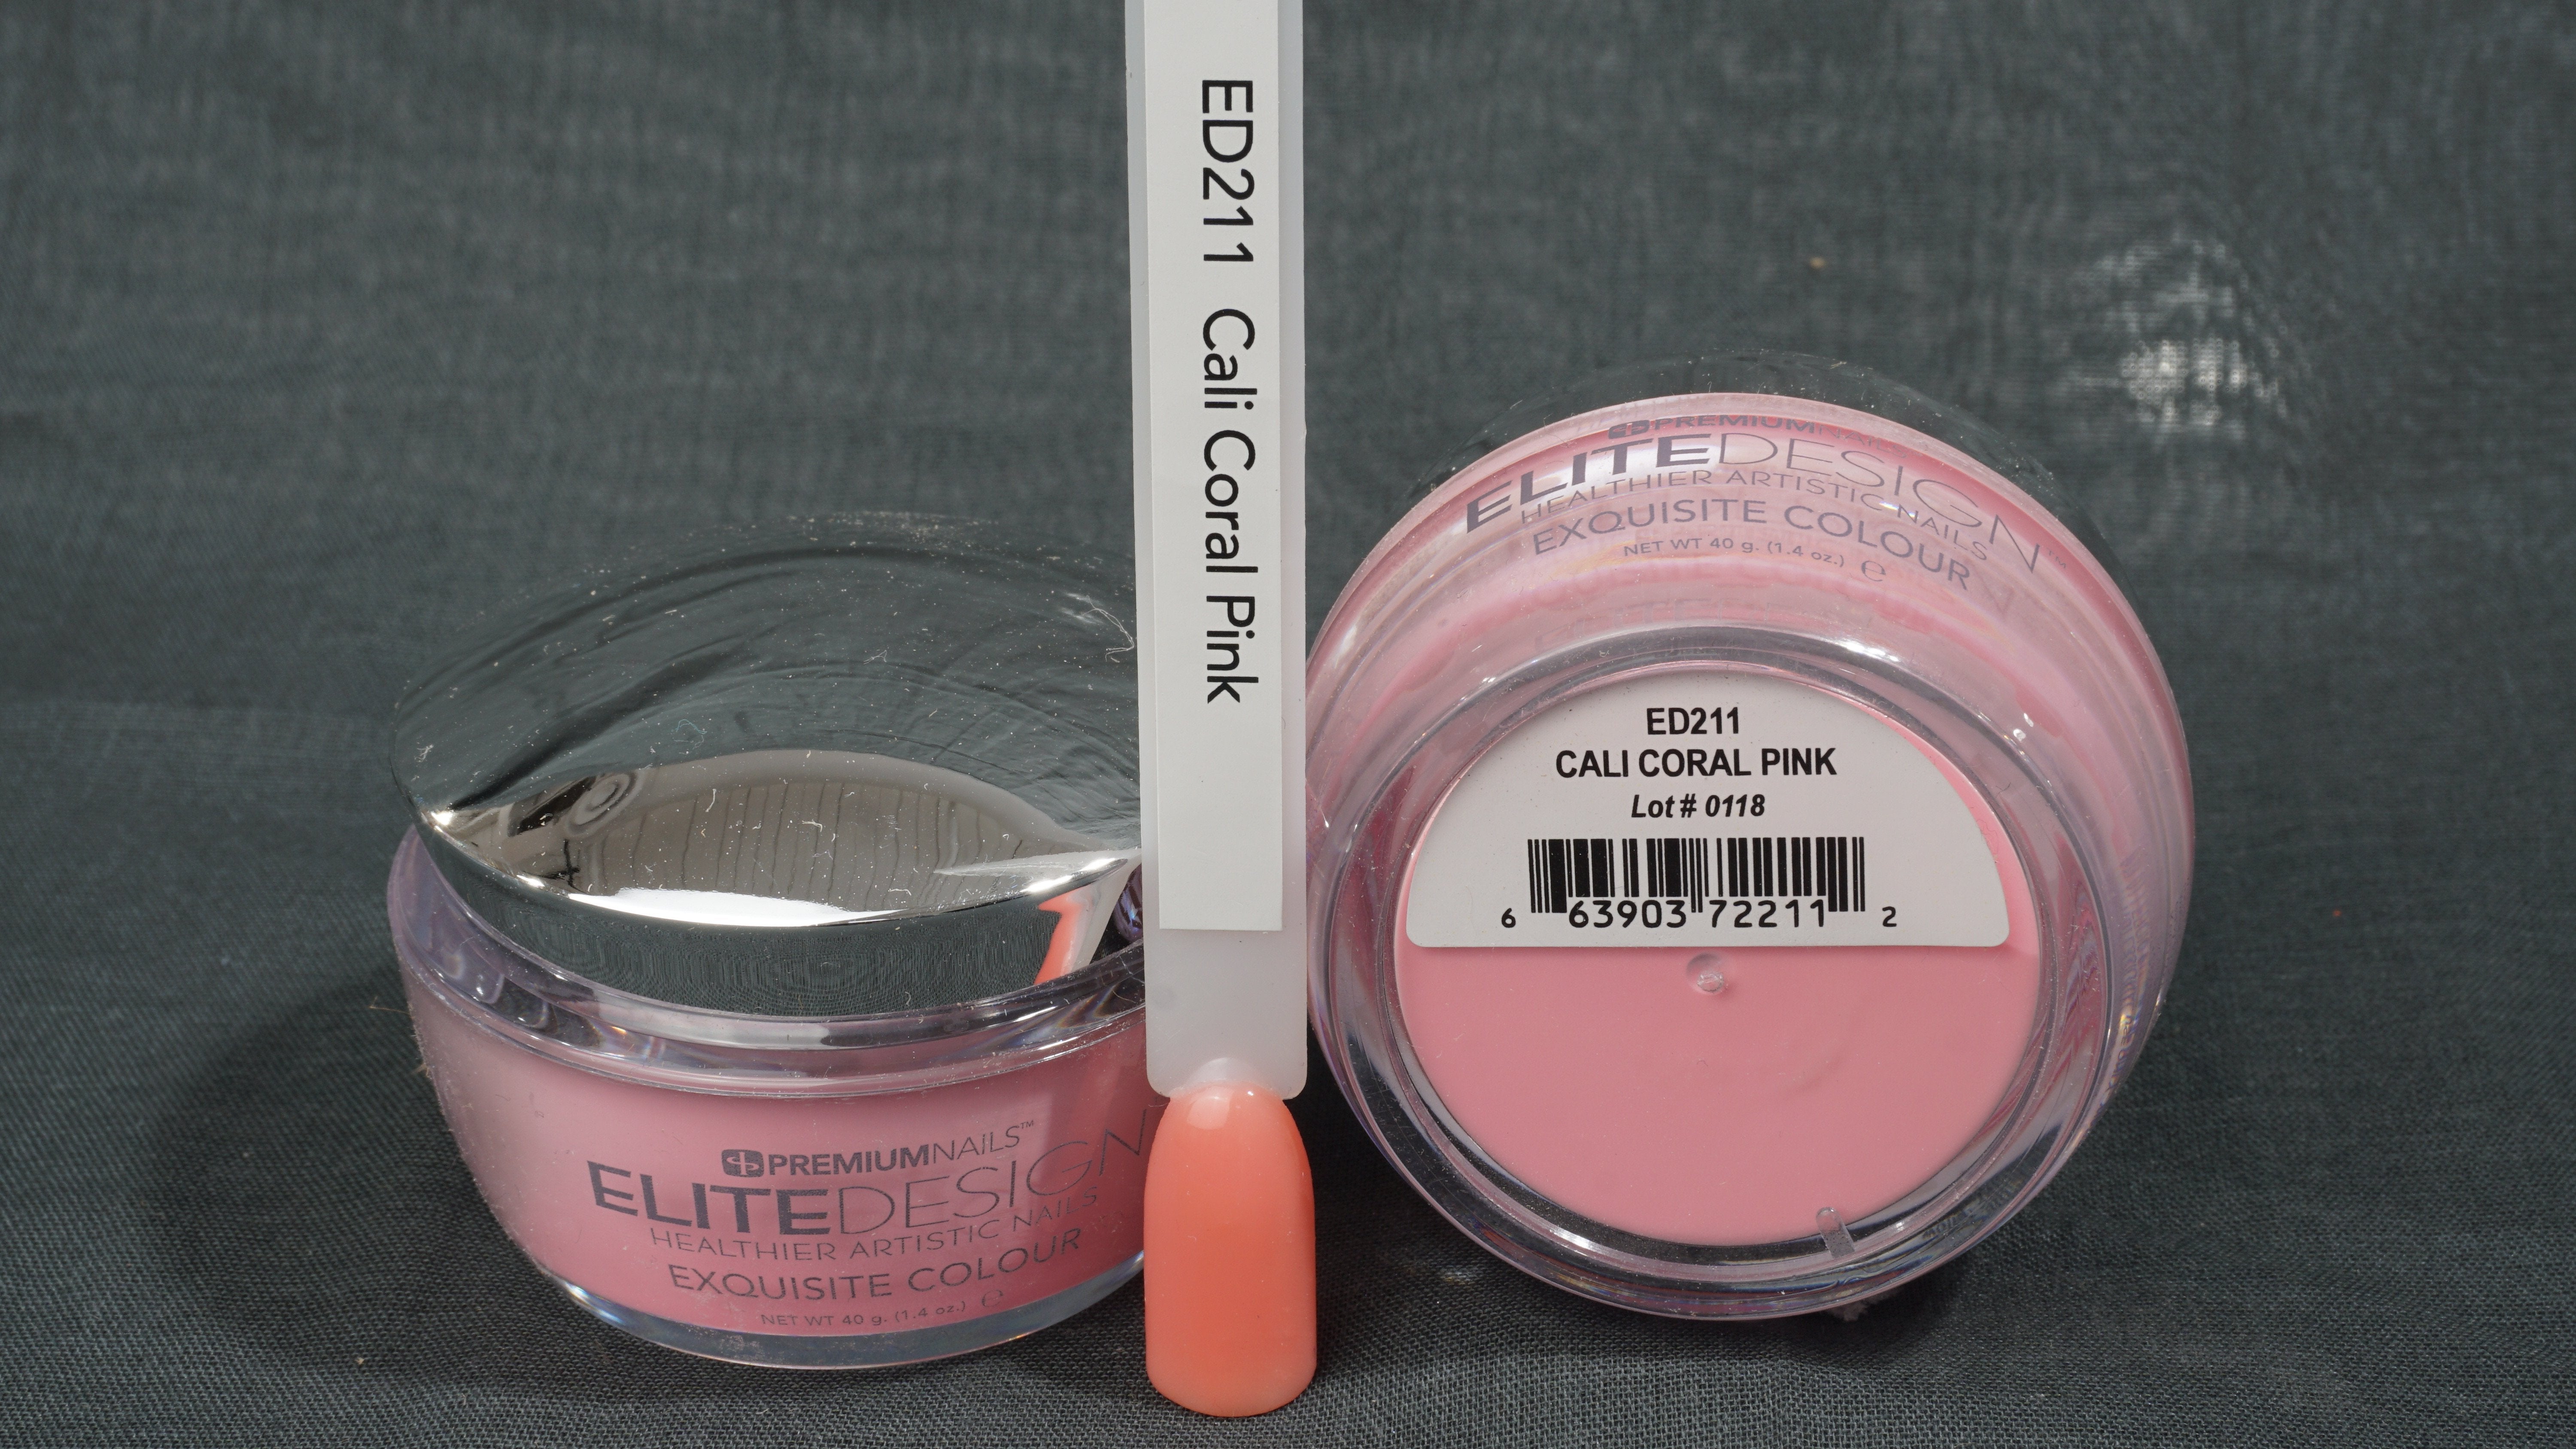 ED211 Cali Coral Pink 40 g - ELITEDESIGN PREMIUM NAILS Dip Powder